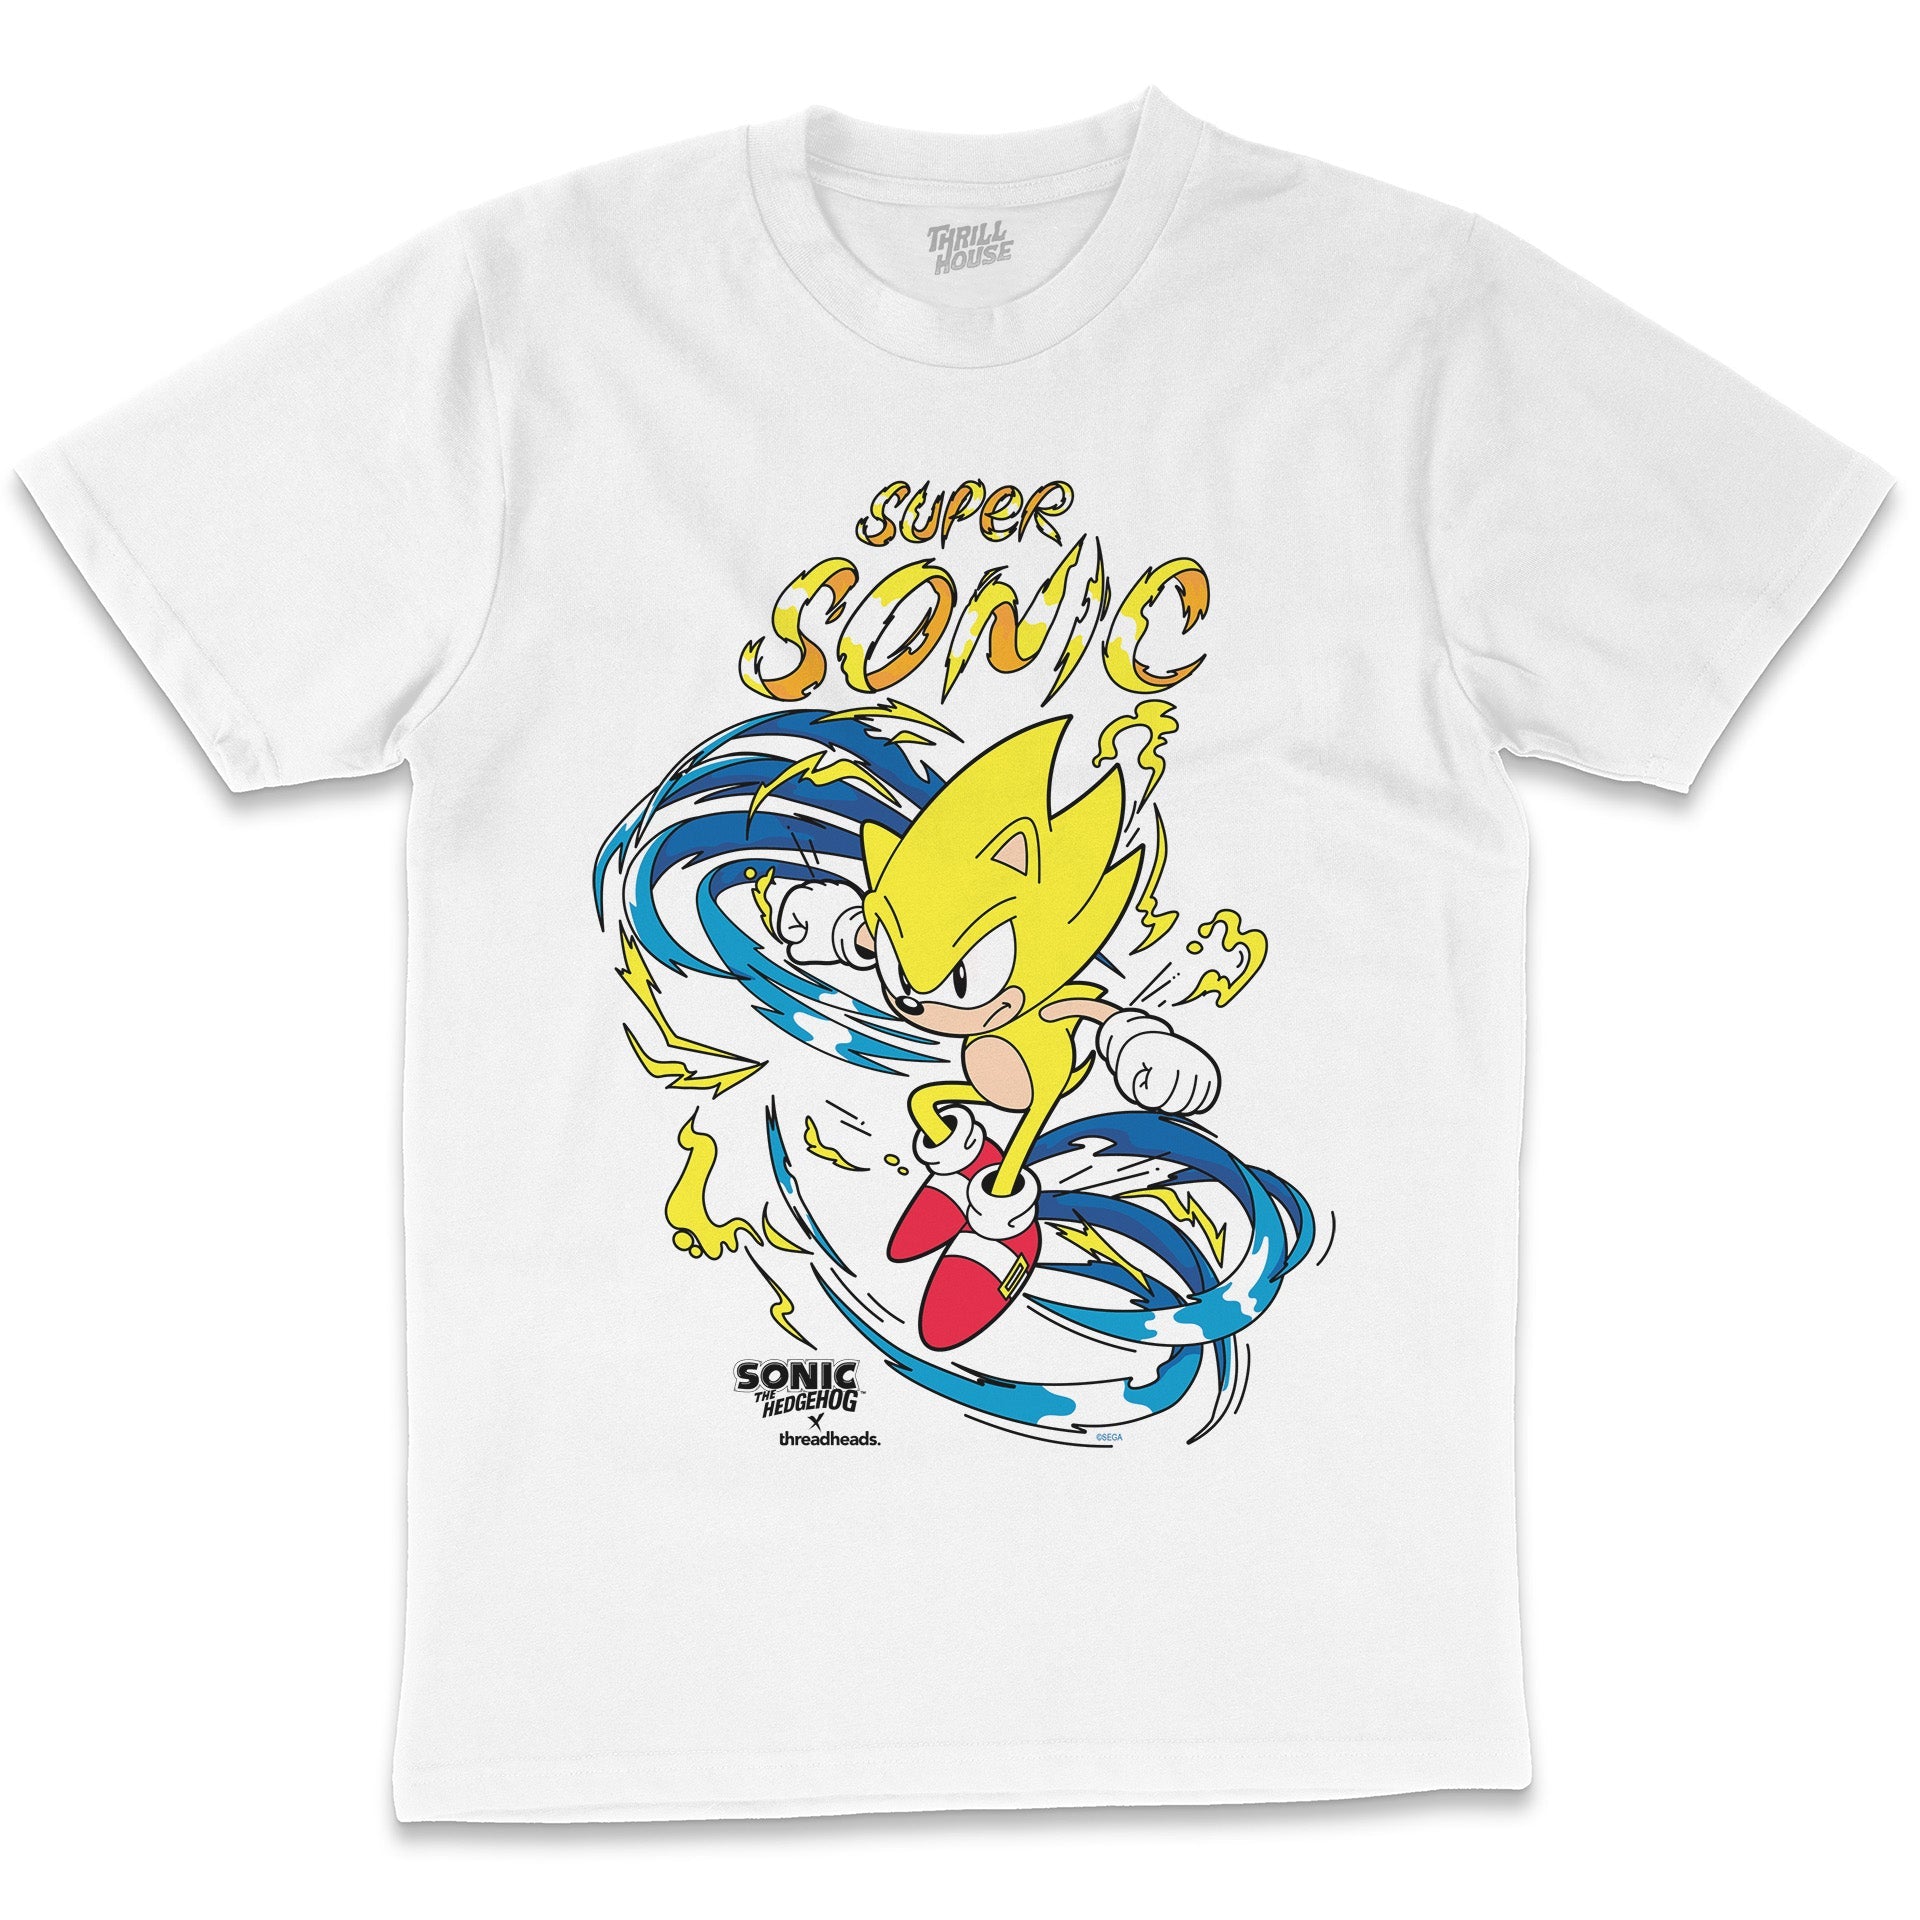 Sonic The Hedgehog Hyper Sonic 90s Gamer Video Game Licensed SEGA Cotton T-Shirt